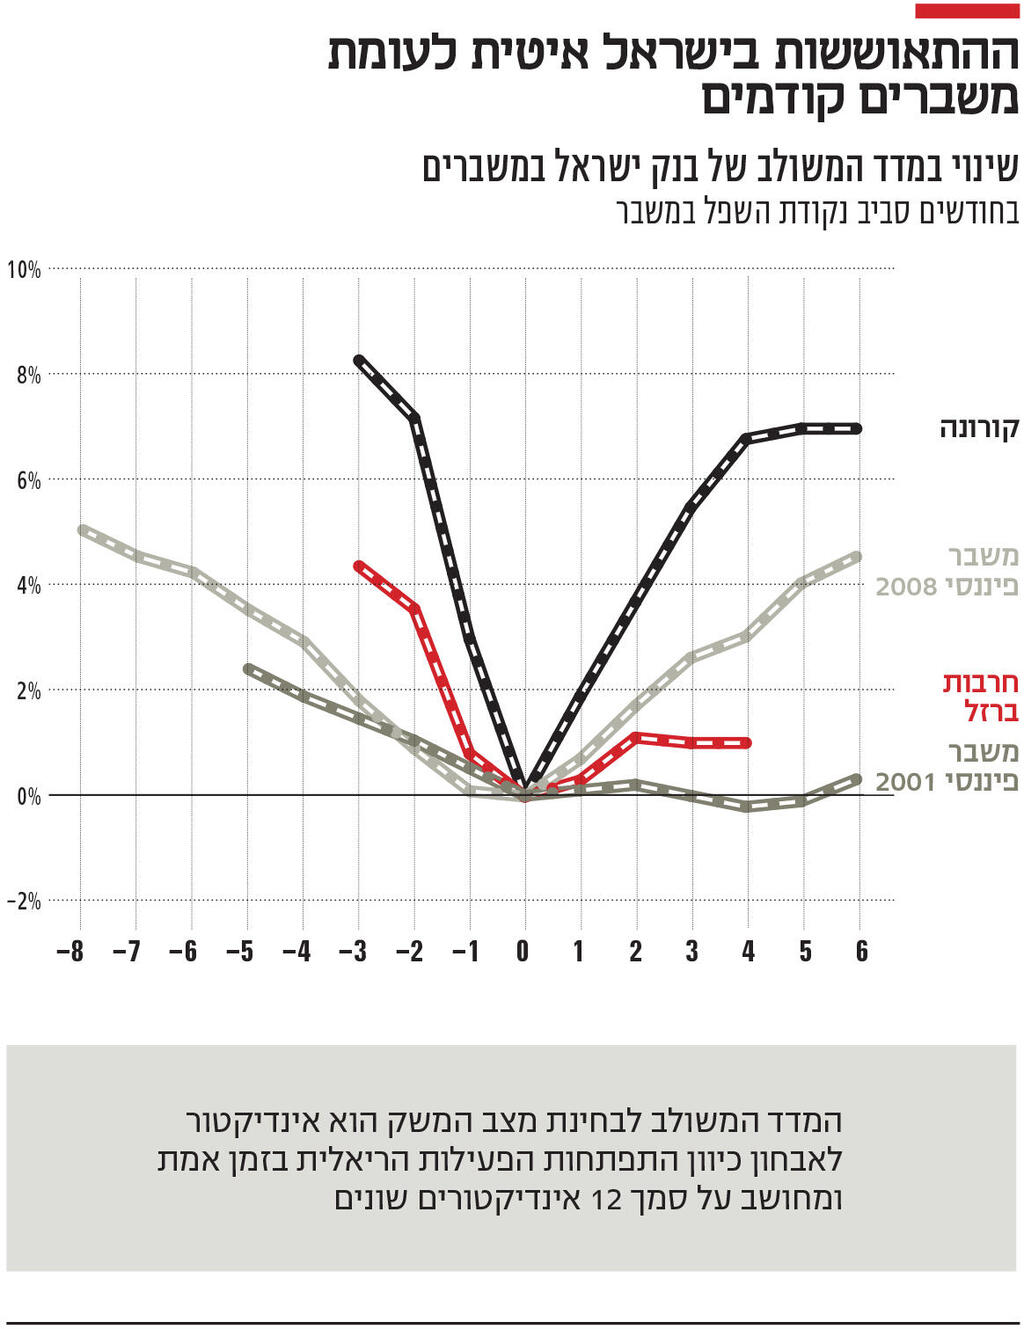 אינפו ההתאוששות בישראל איטית לעומת משברים קודמים